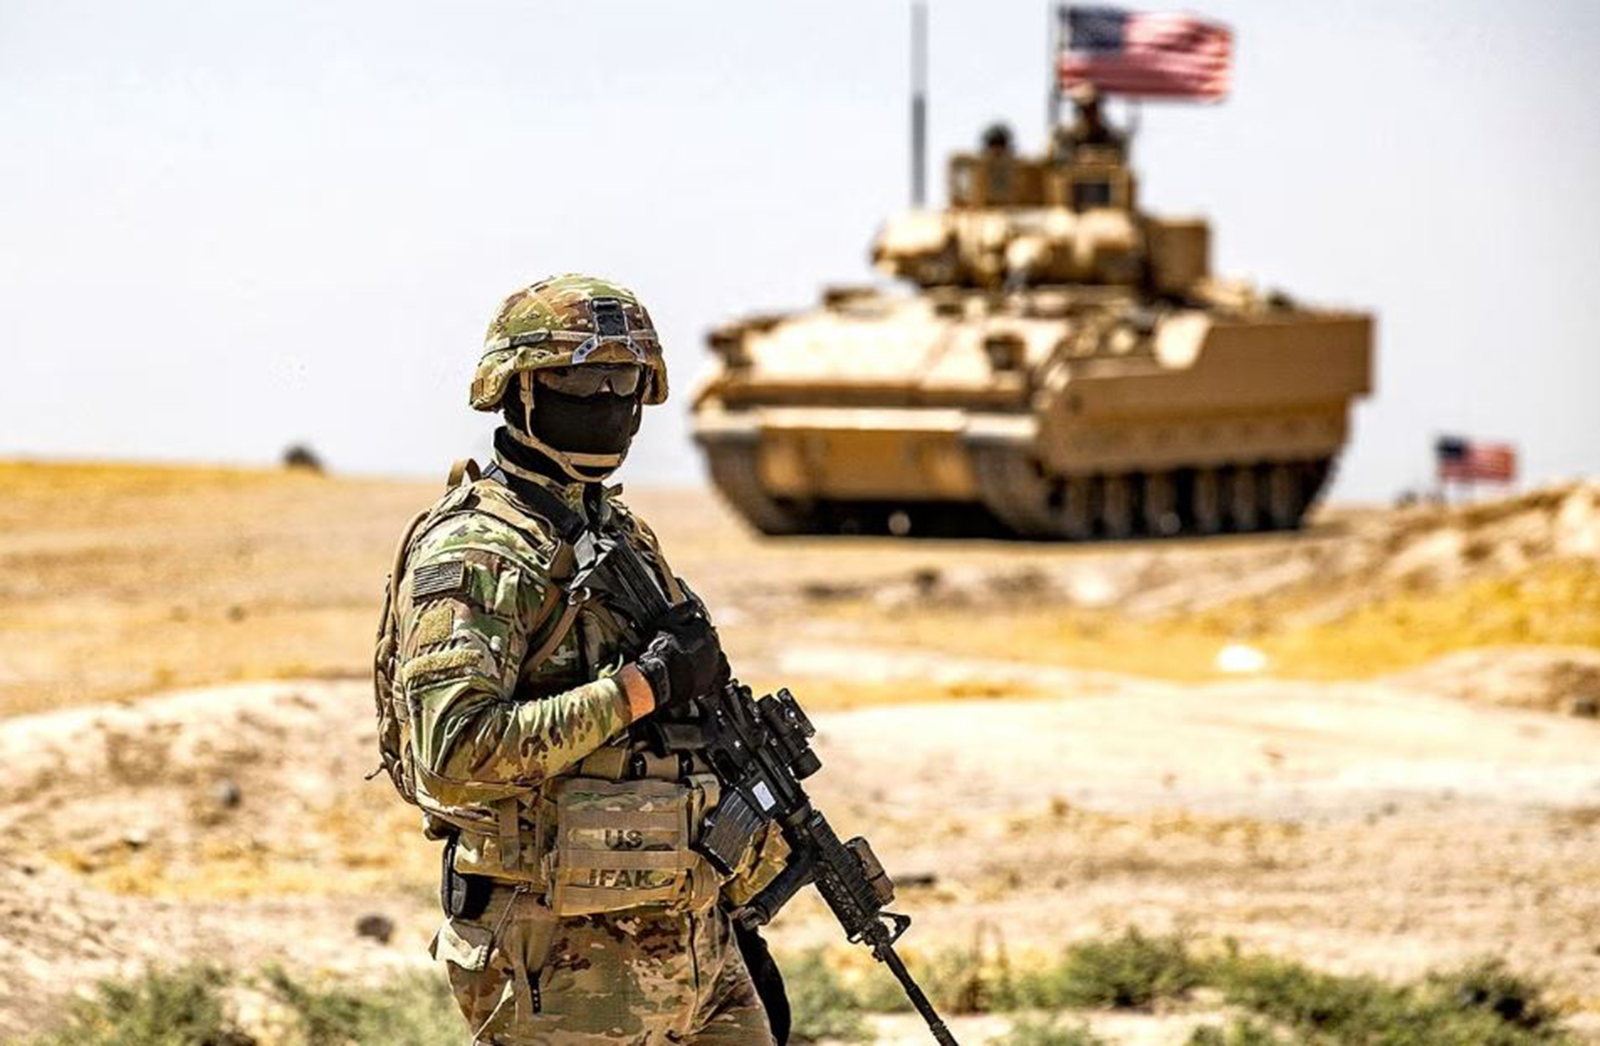 تعزيز القوات الأمريكية في الشرق الأوسط تحسبًا للهجمات المتزايدة